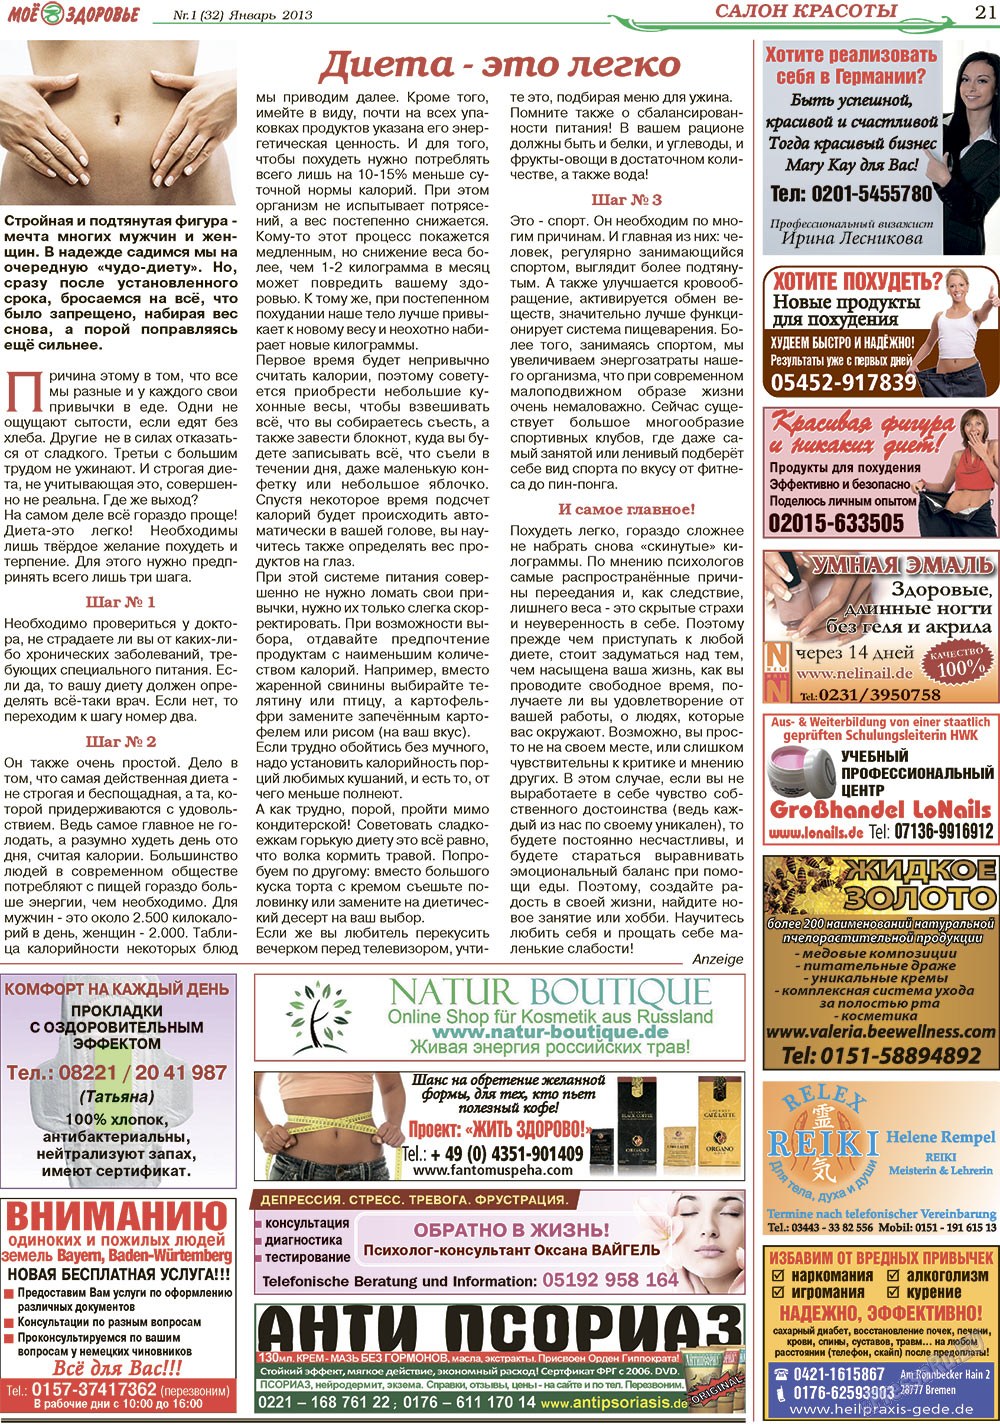 Кругозор (газета). 2013 год, номер 1, стр. 21